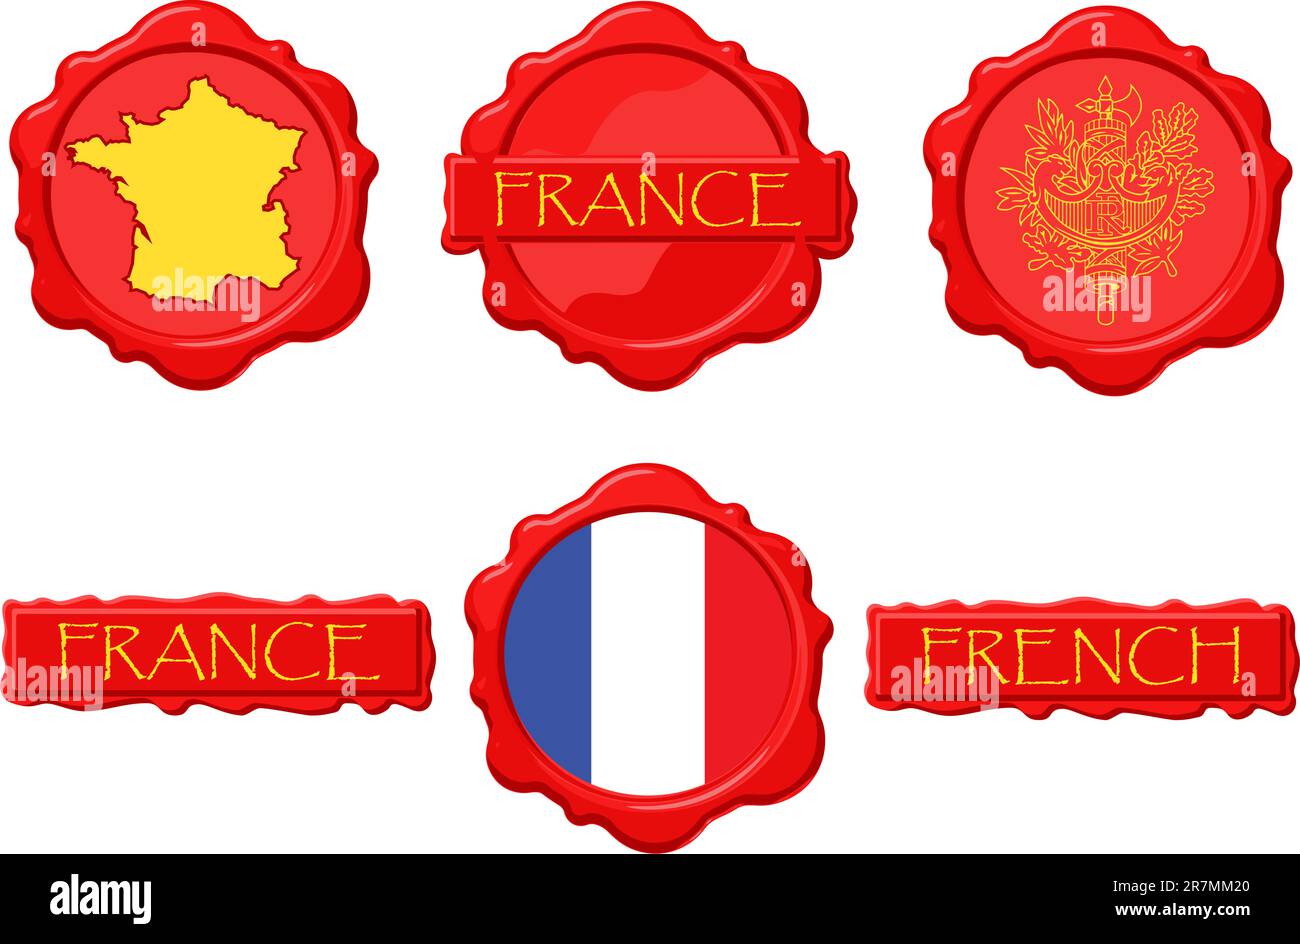 Timbres de cire de France avec drapeau, sceau, carte et nom. Illustration de Vecteur